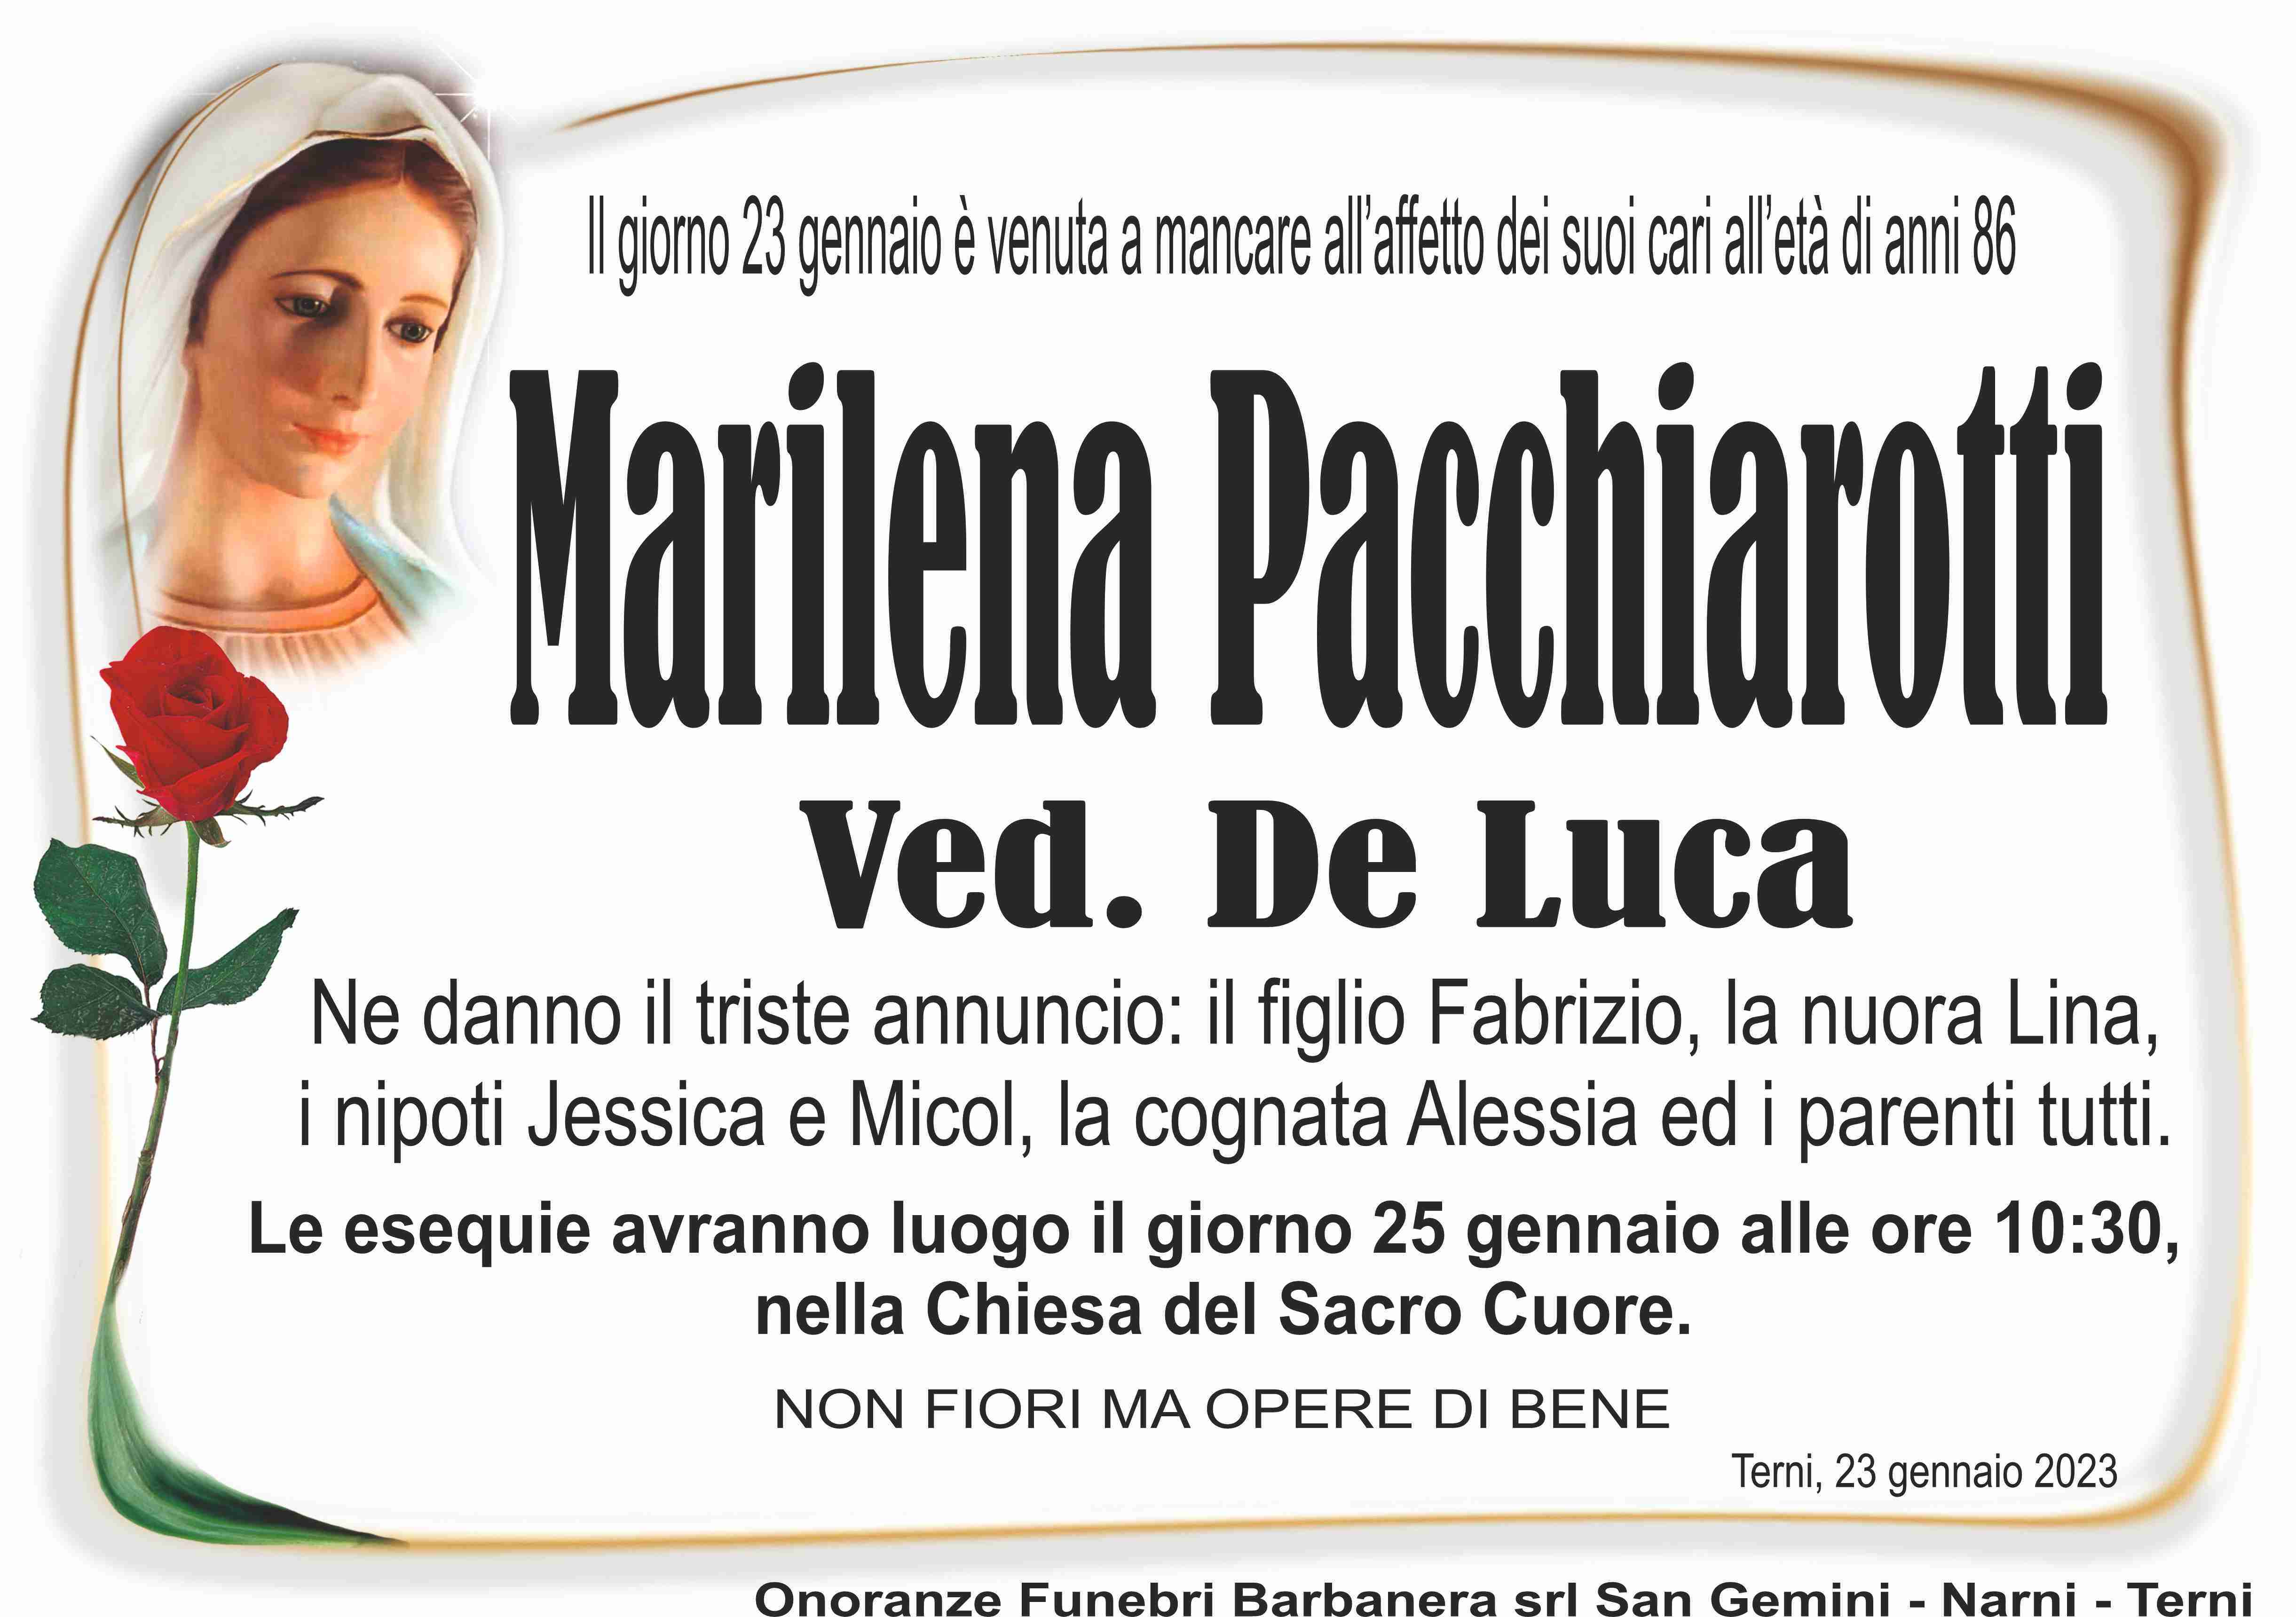 Marilena Pacchiarotti